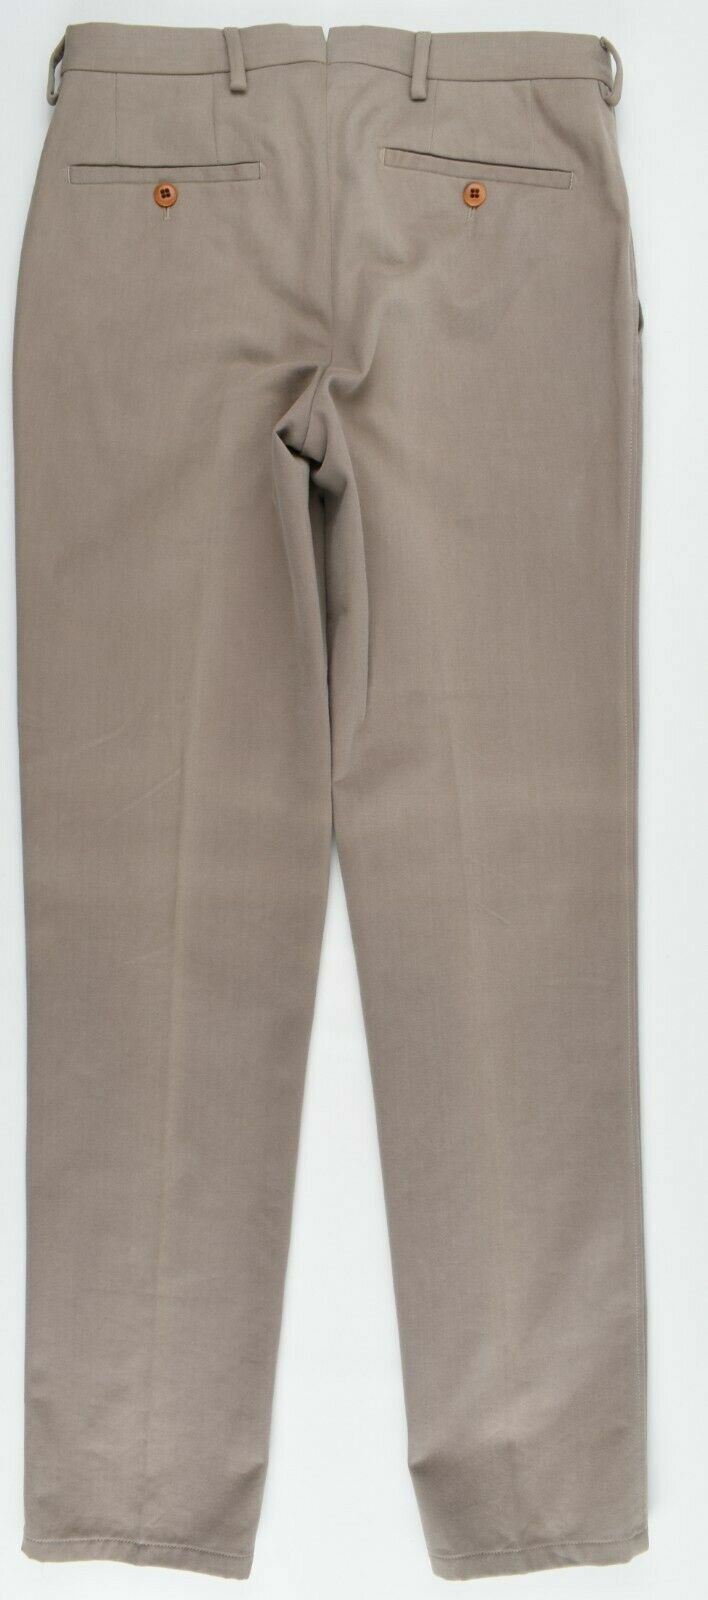 DUCA VISCONTI DI MODRONE Men's Classic Chino Trousers, Khaki, size W30 / IT 46